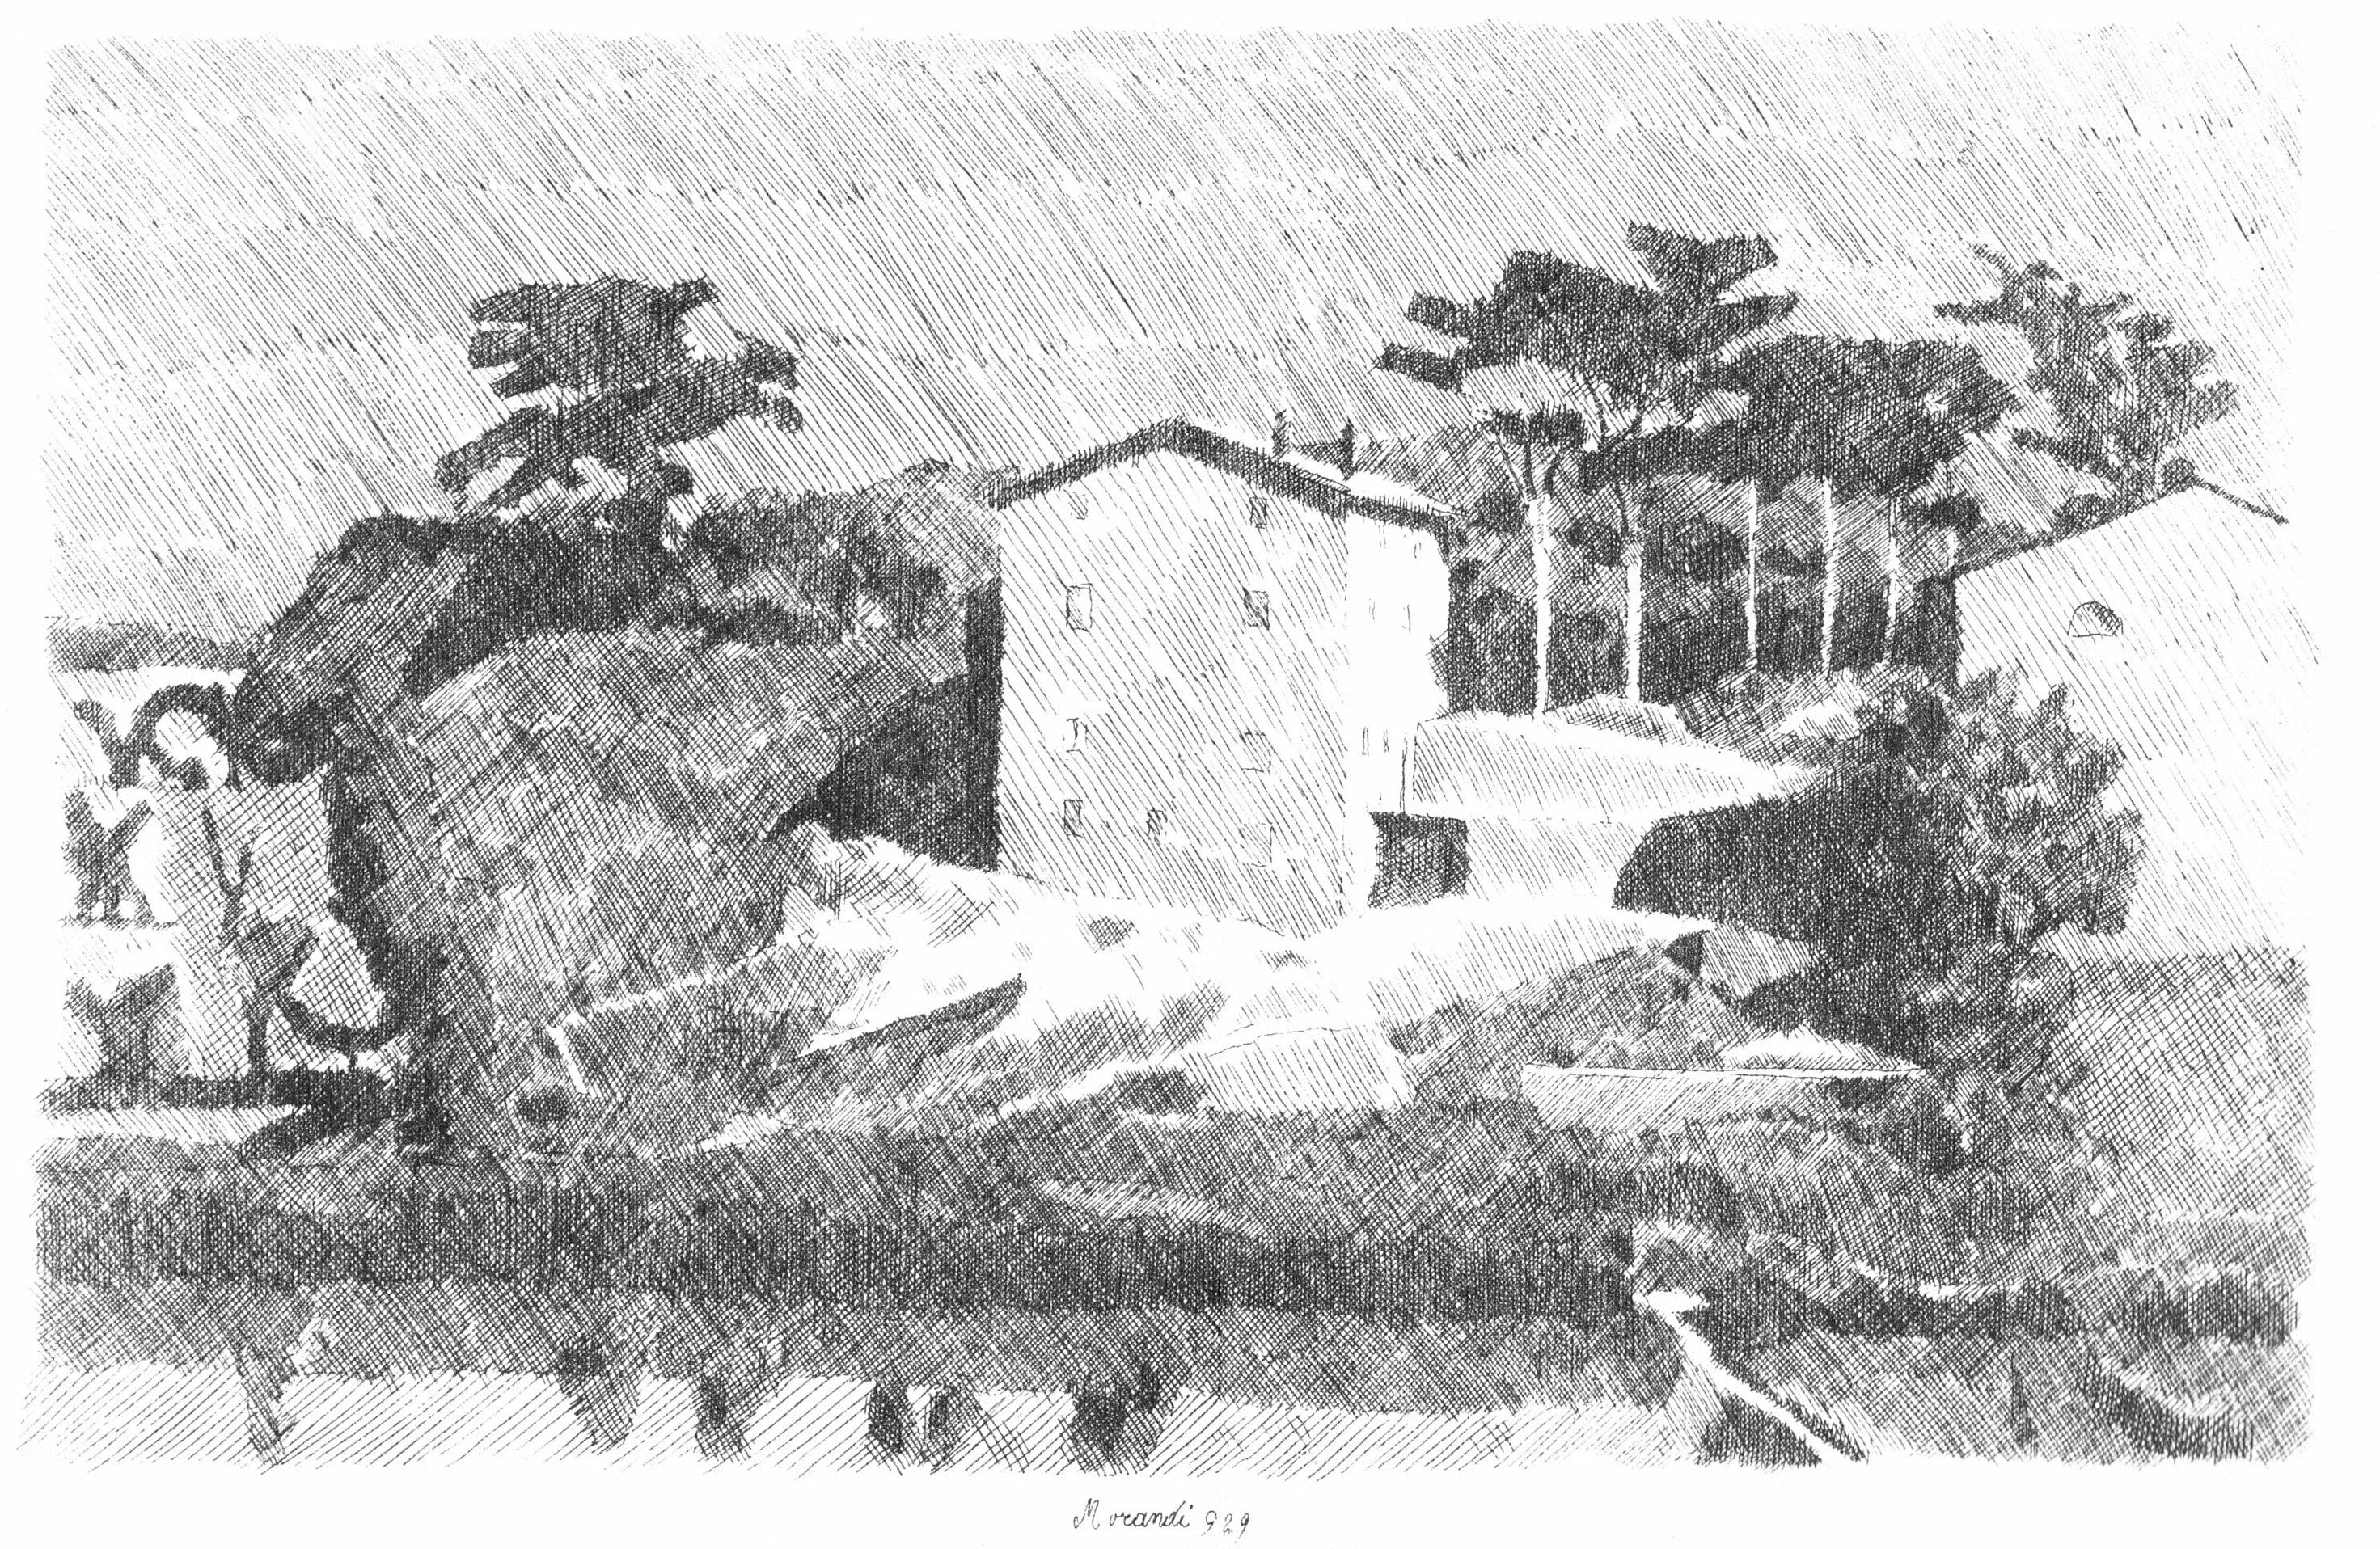 Houses of Campiaro in Grizzana, Giorgio Morandi